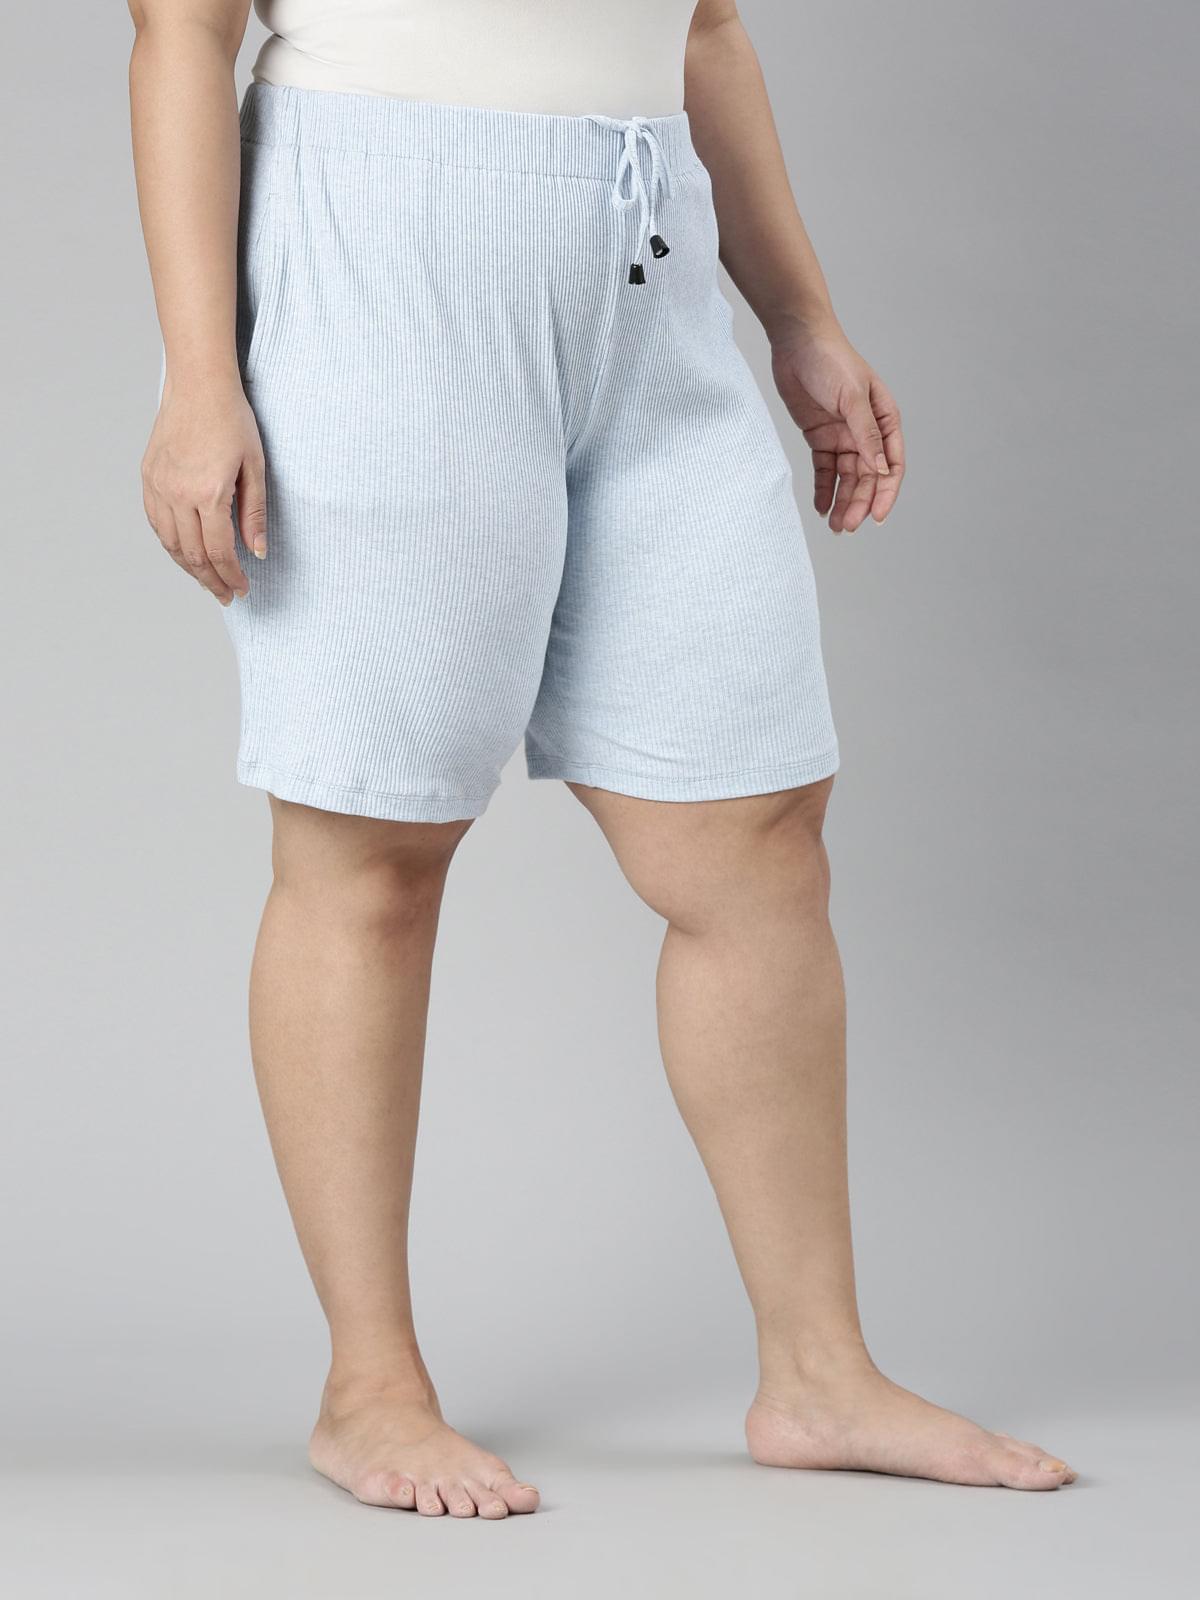 TheShaili - Women's Blue ribbed shorts